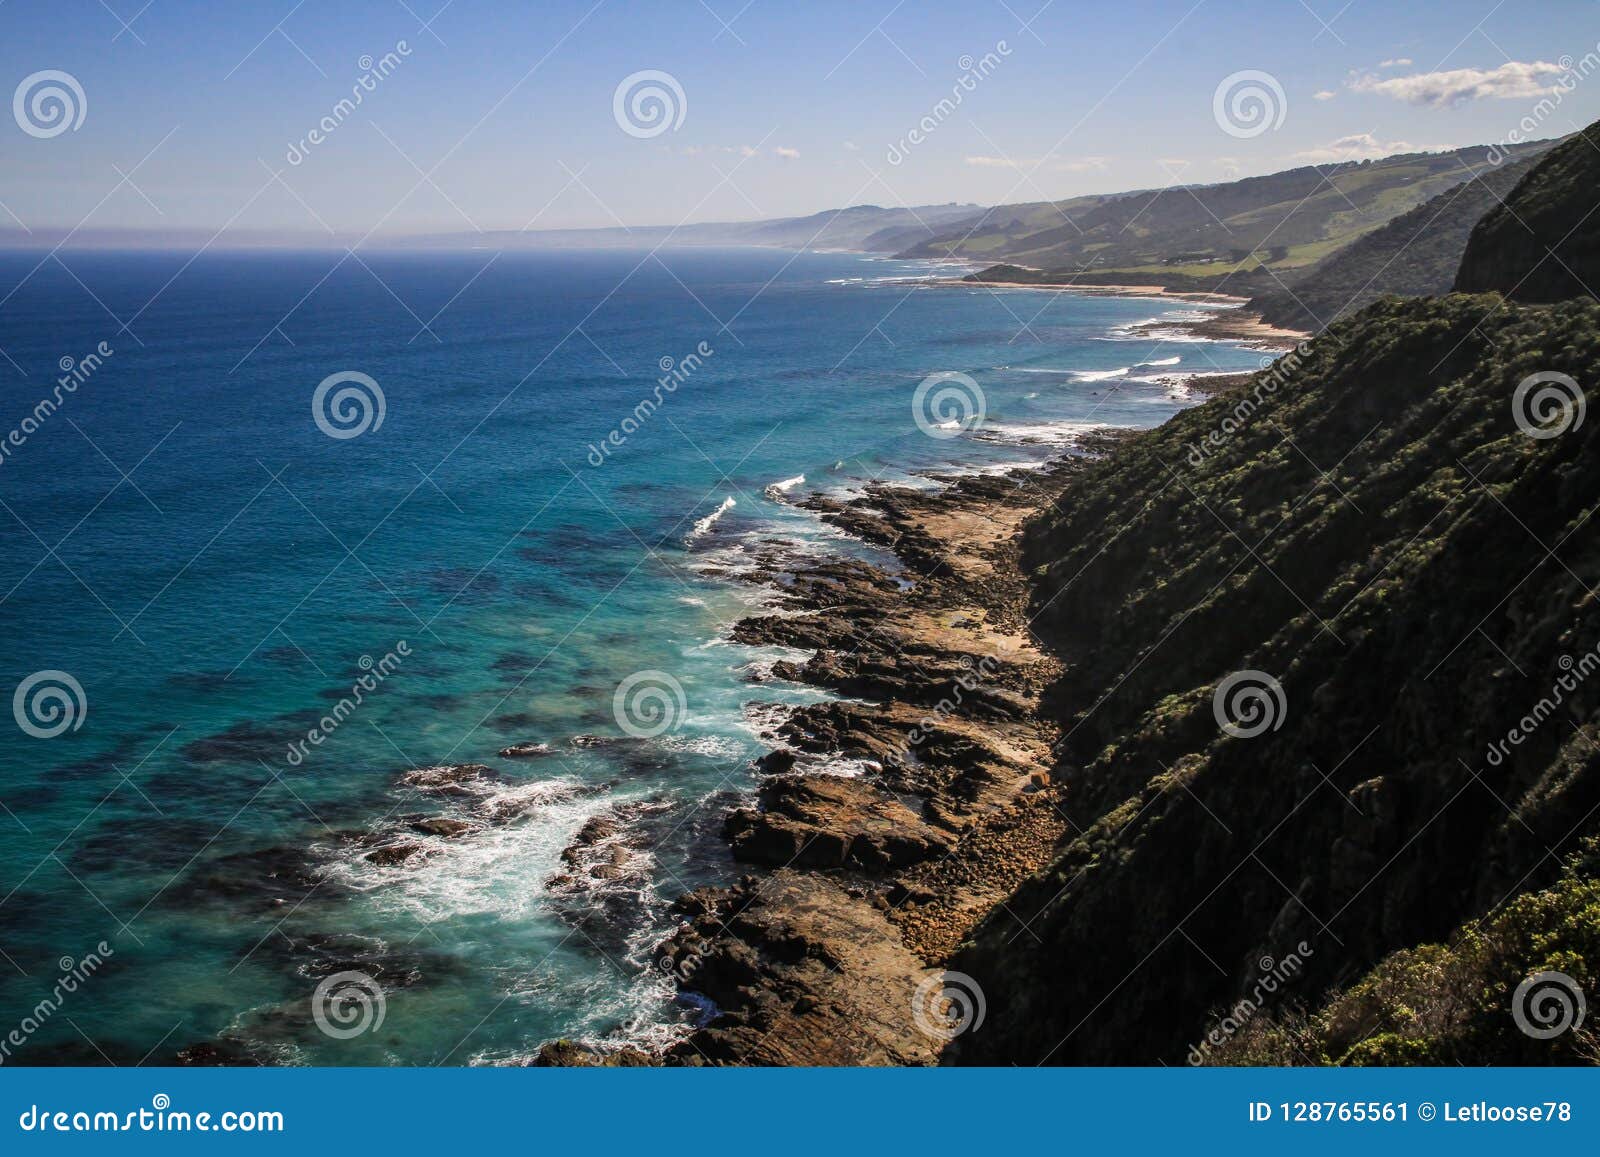 Cape Patton Point, Great Ocean Road, Victoria, Australia Image - Image of apollo: 128765561